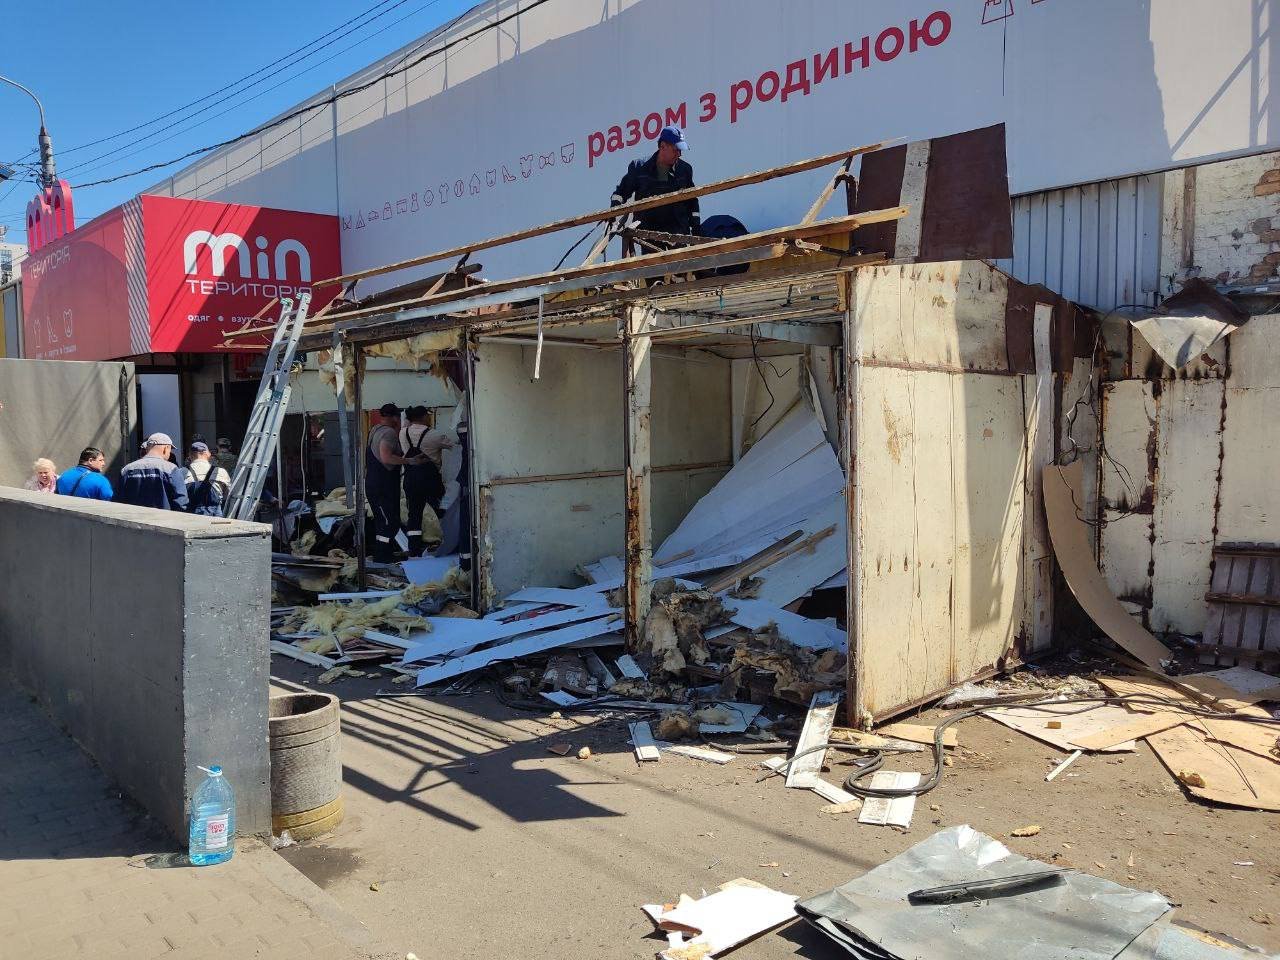 Біля станції метро у Києві провели масштабний демонтаж кіосків